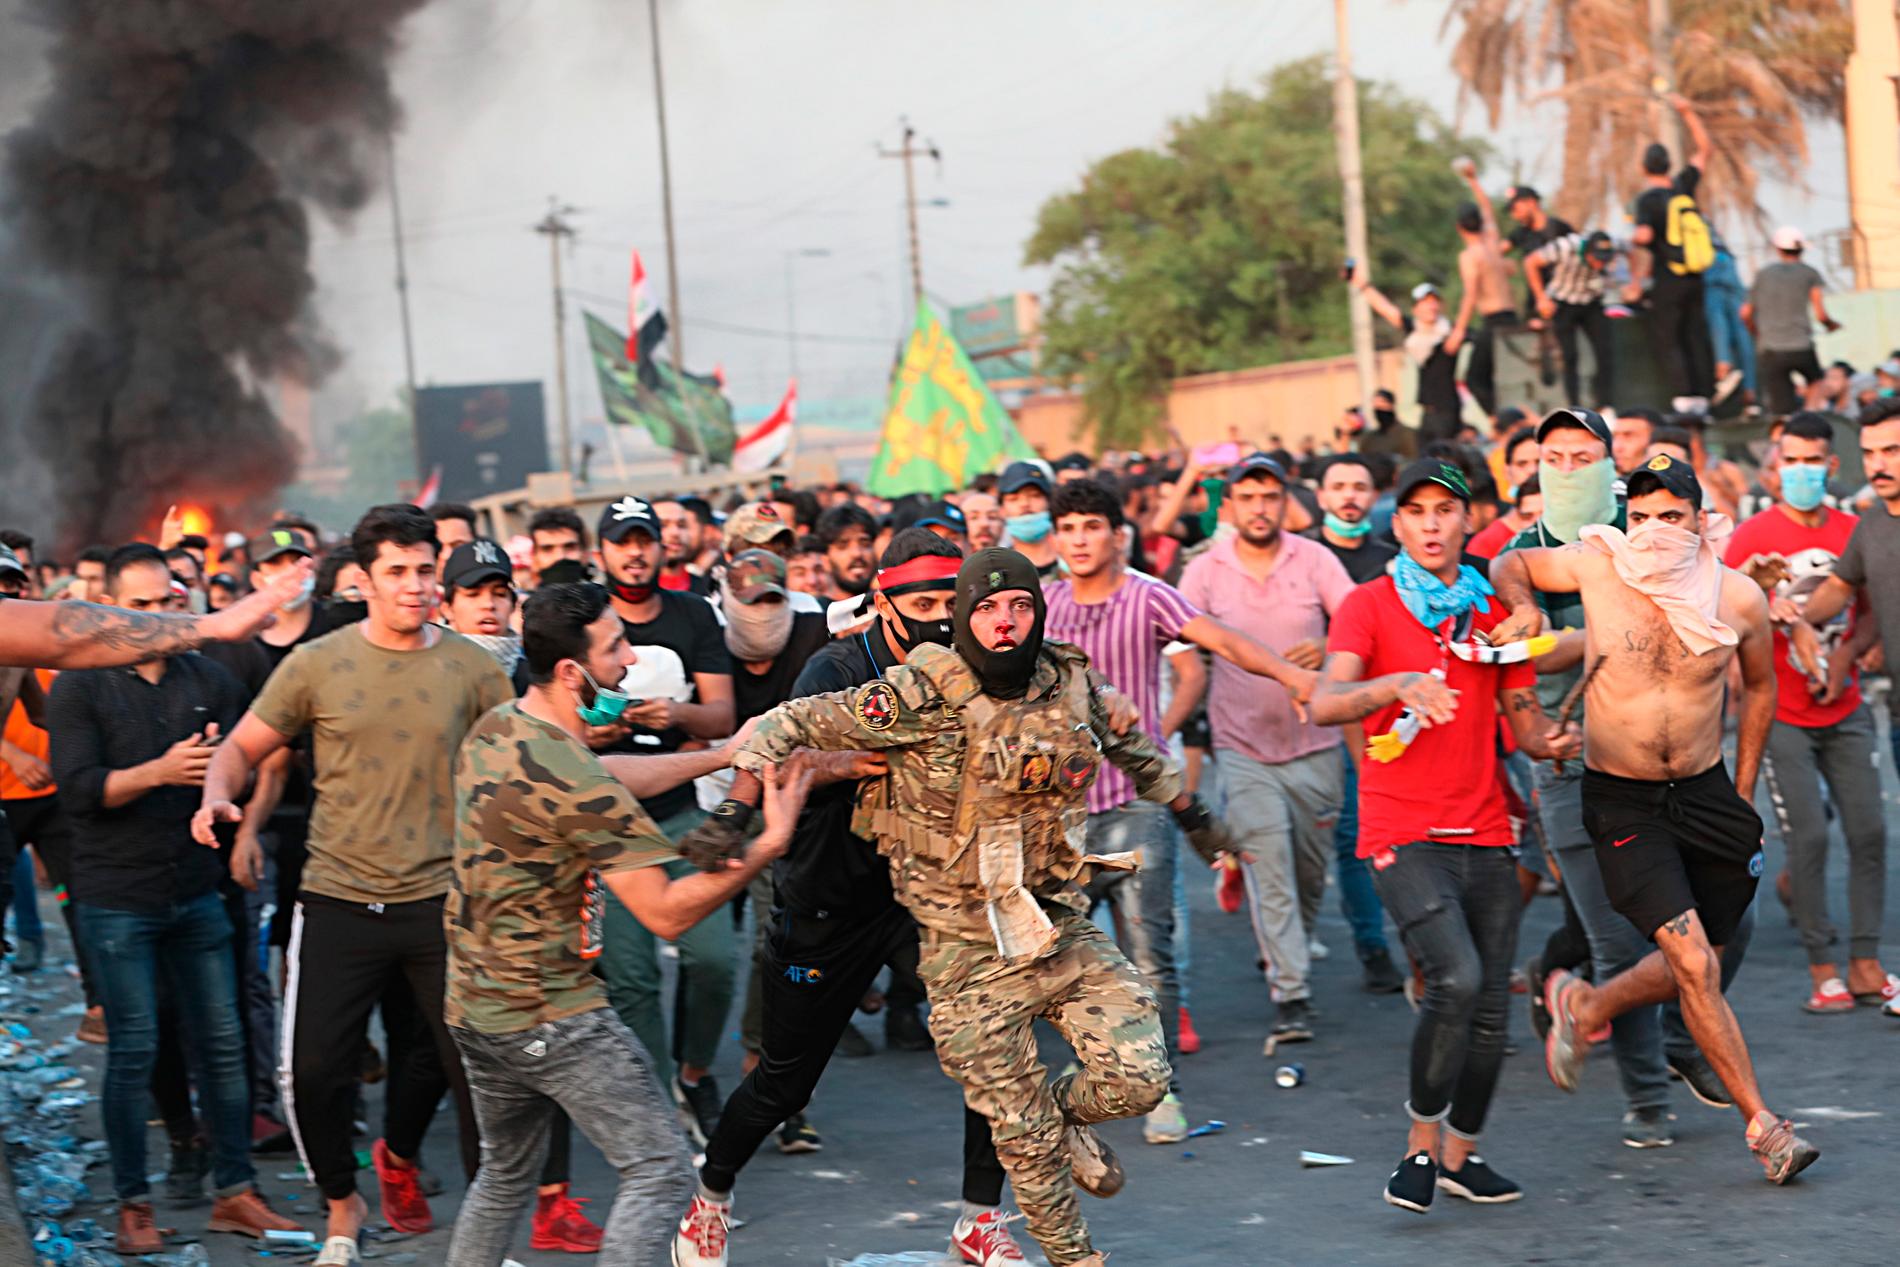 Enligt AP visar bilden en irakisk soldat som får hjälp av demonstranter att fly efter att ha misshandlats av andra demonstranter.